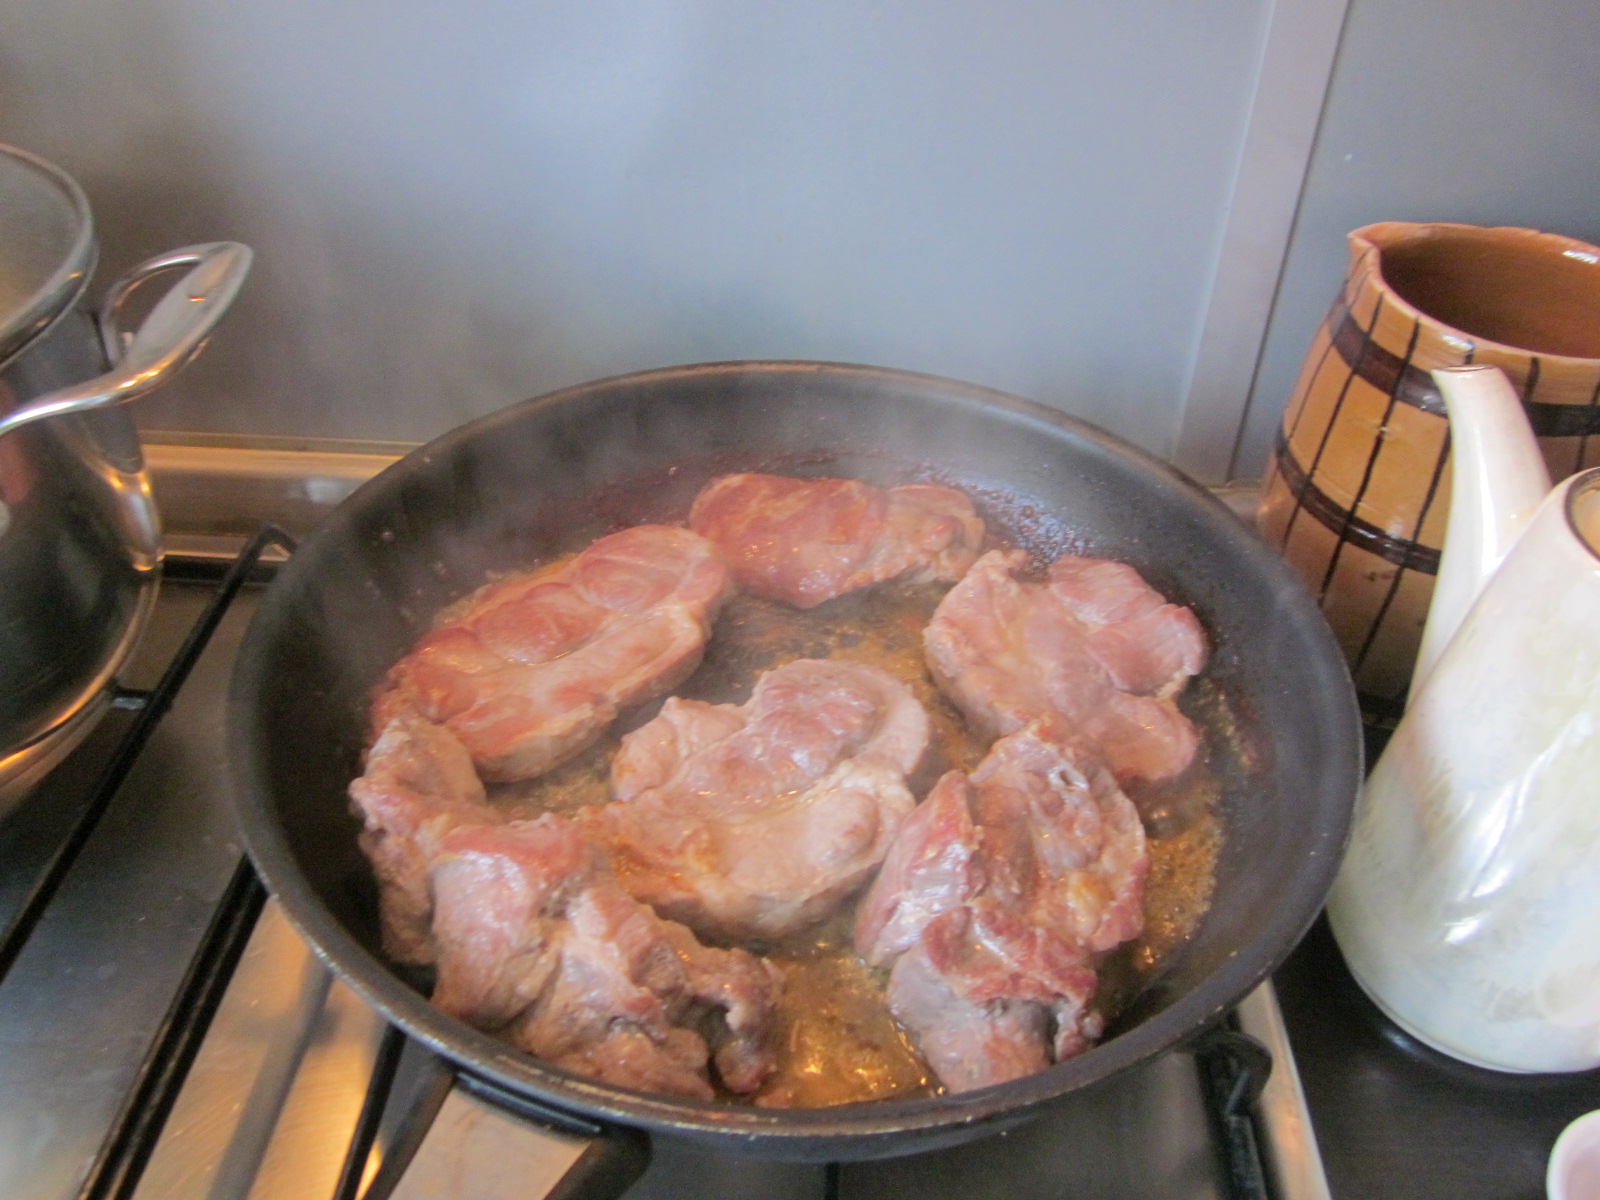 Ceafa de porc cu galuste de cartofi, sos de ardei si salata tricolora